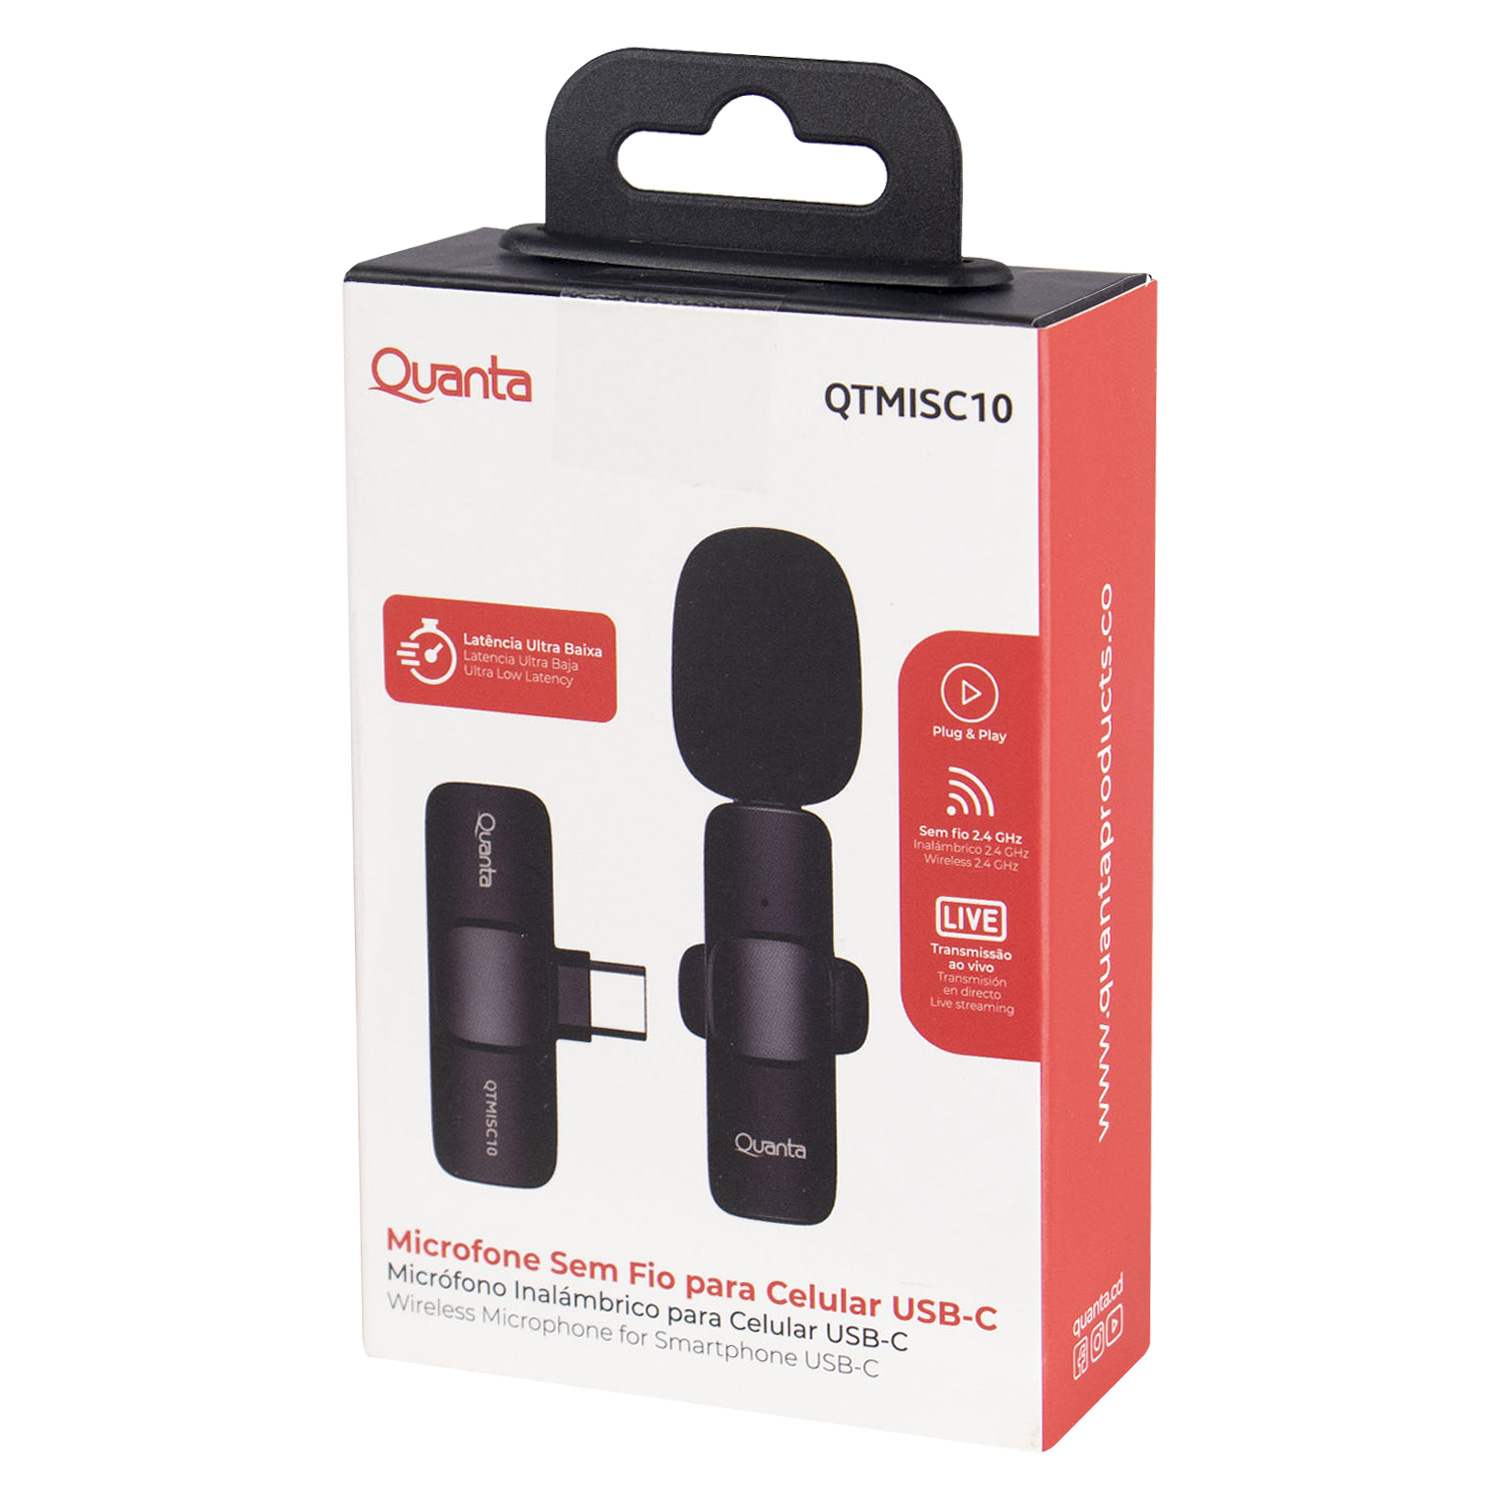 Microfone para Celular Quanta QTMISC10 / USB-C - Preto